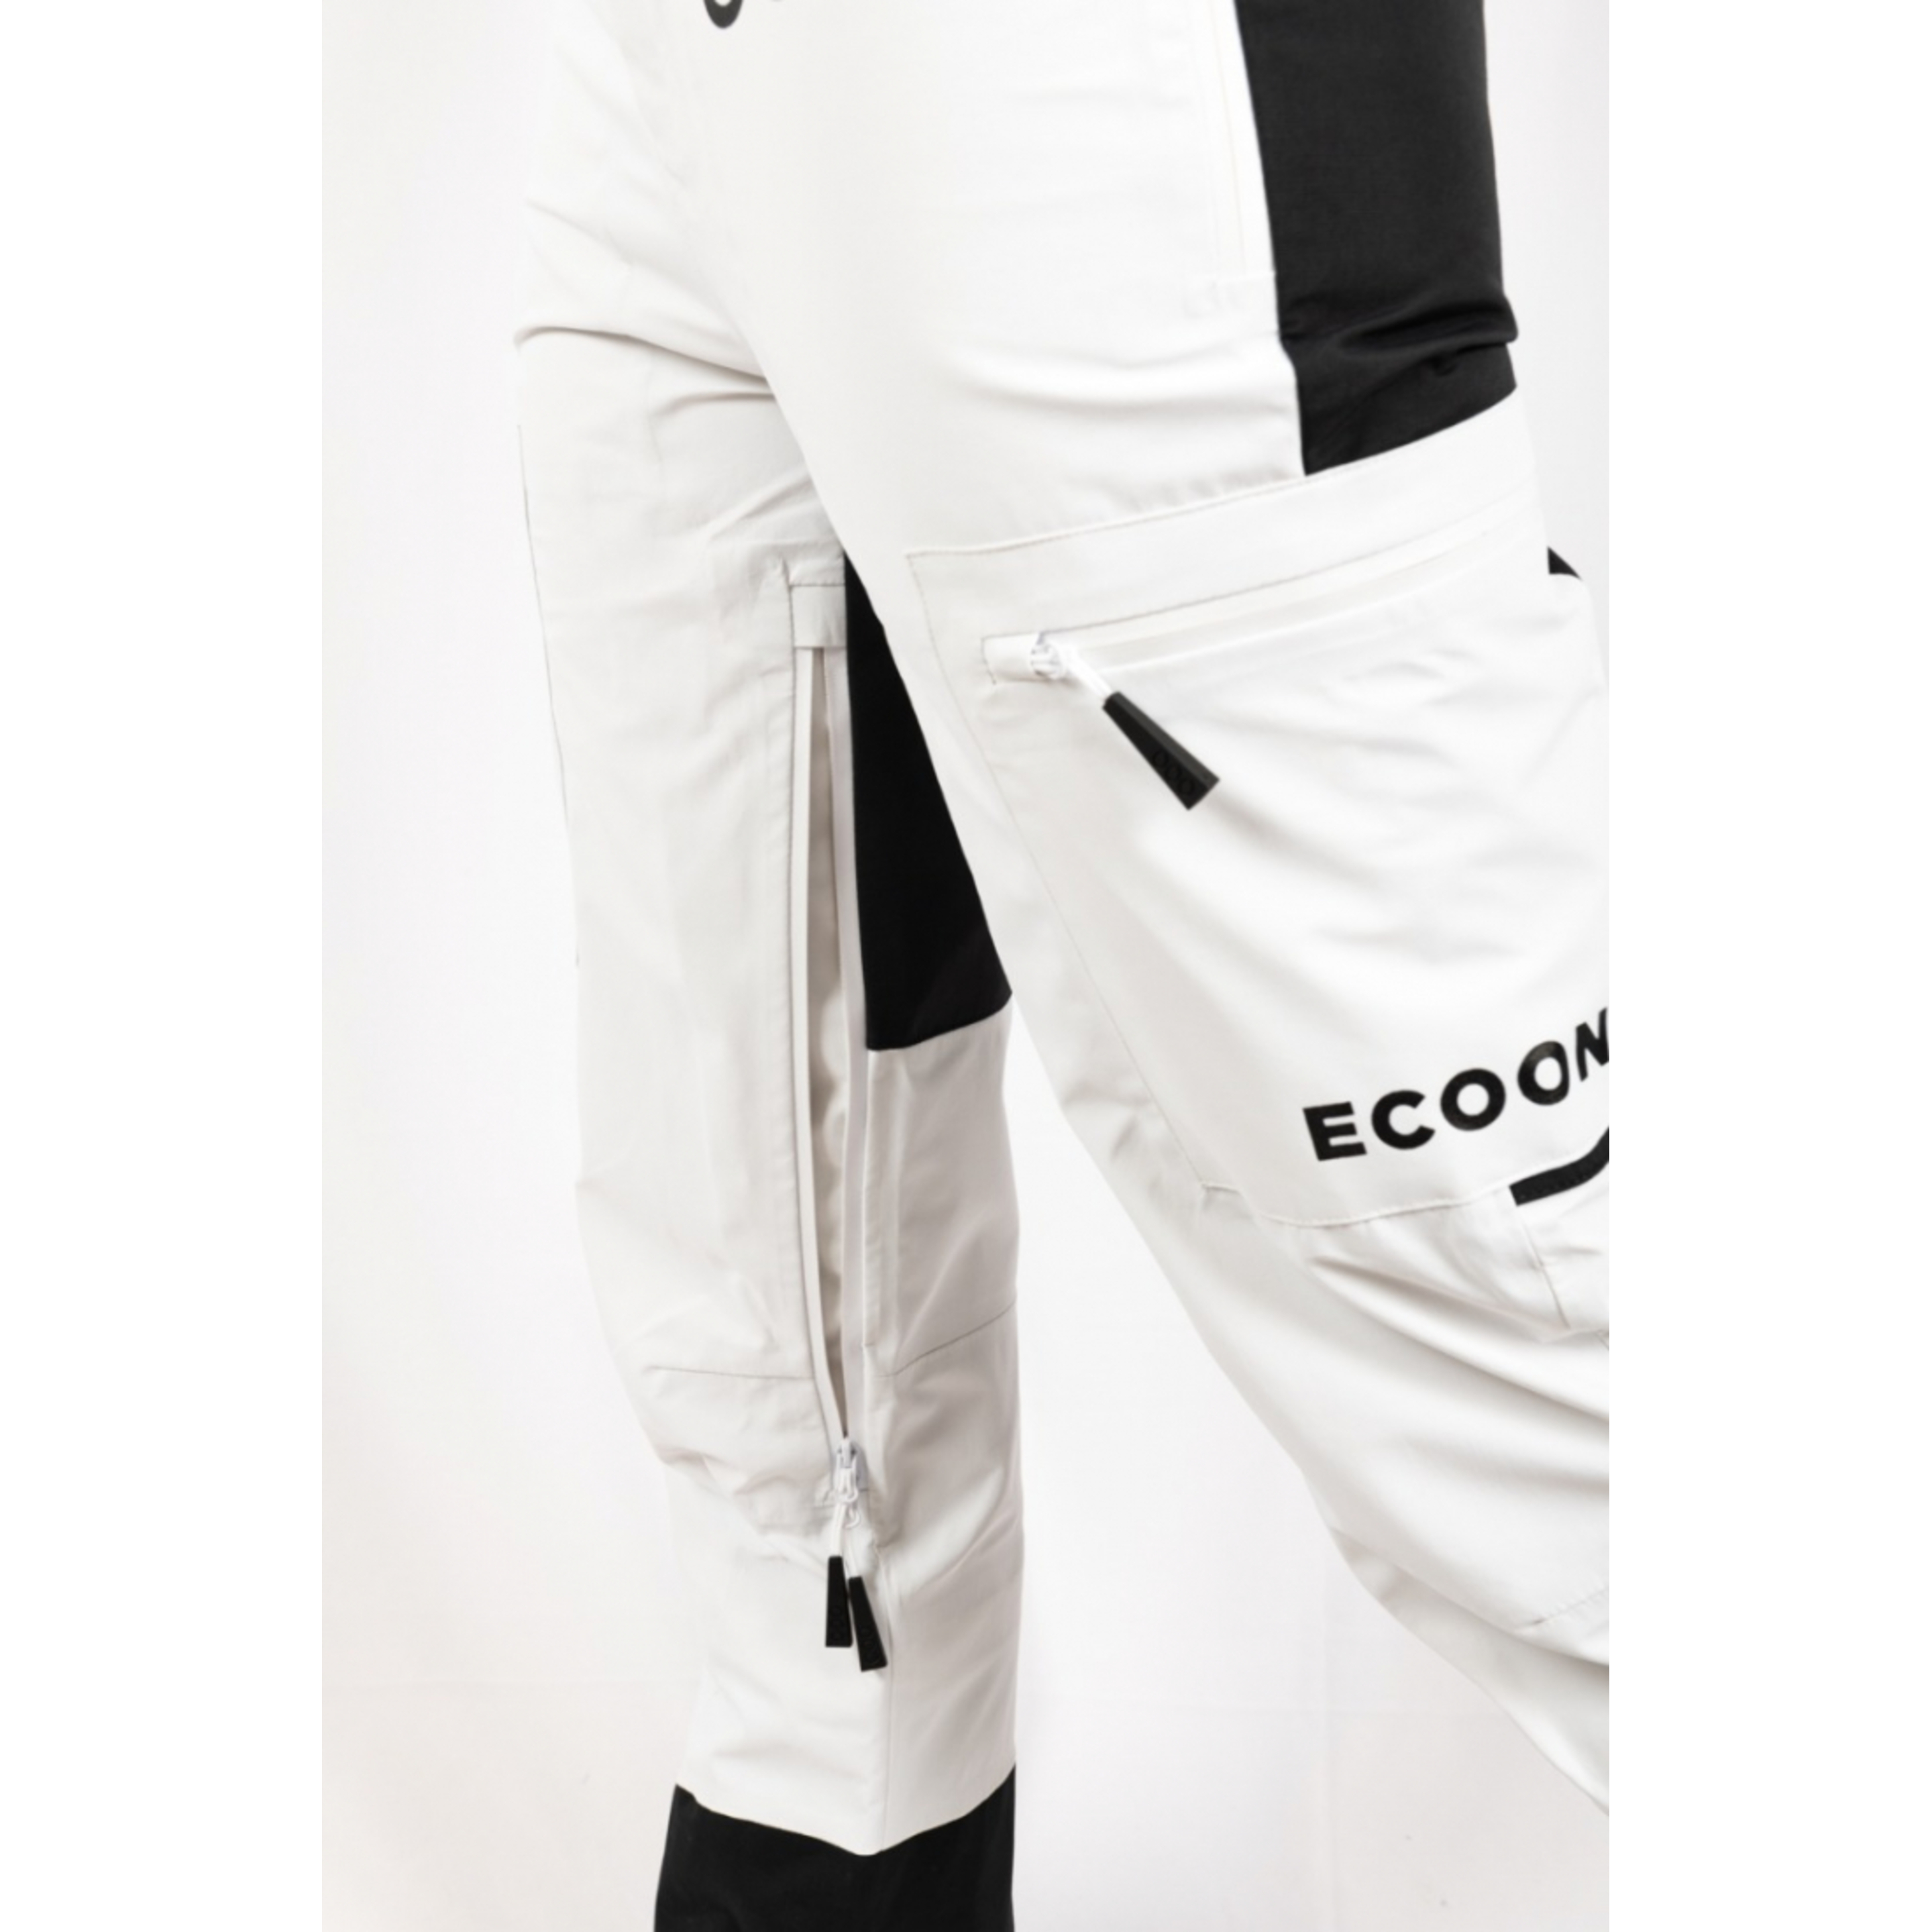 Pantalones De Esquí Ecoon Ecoexplorer - Blanco/Negro - Ecoproducto Reciclado Y Reciclable  MKP